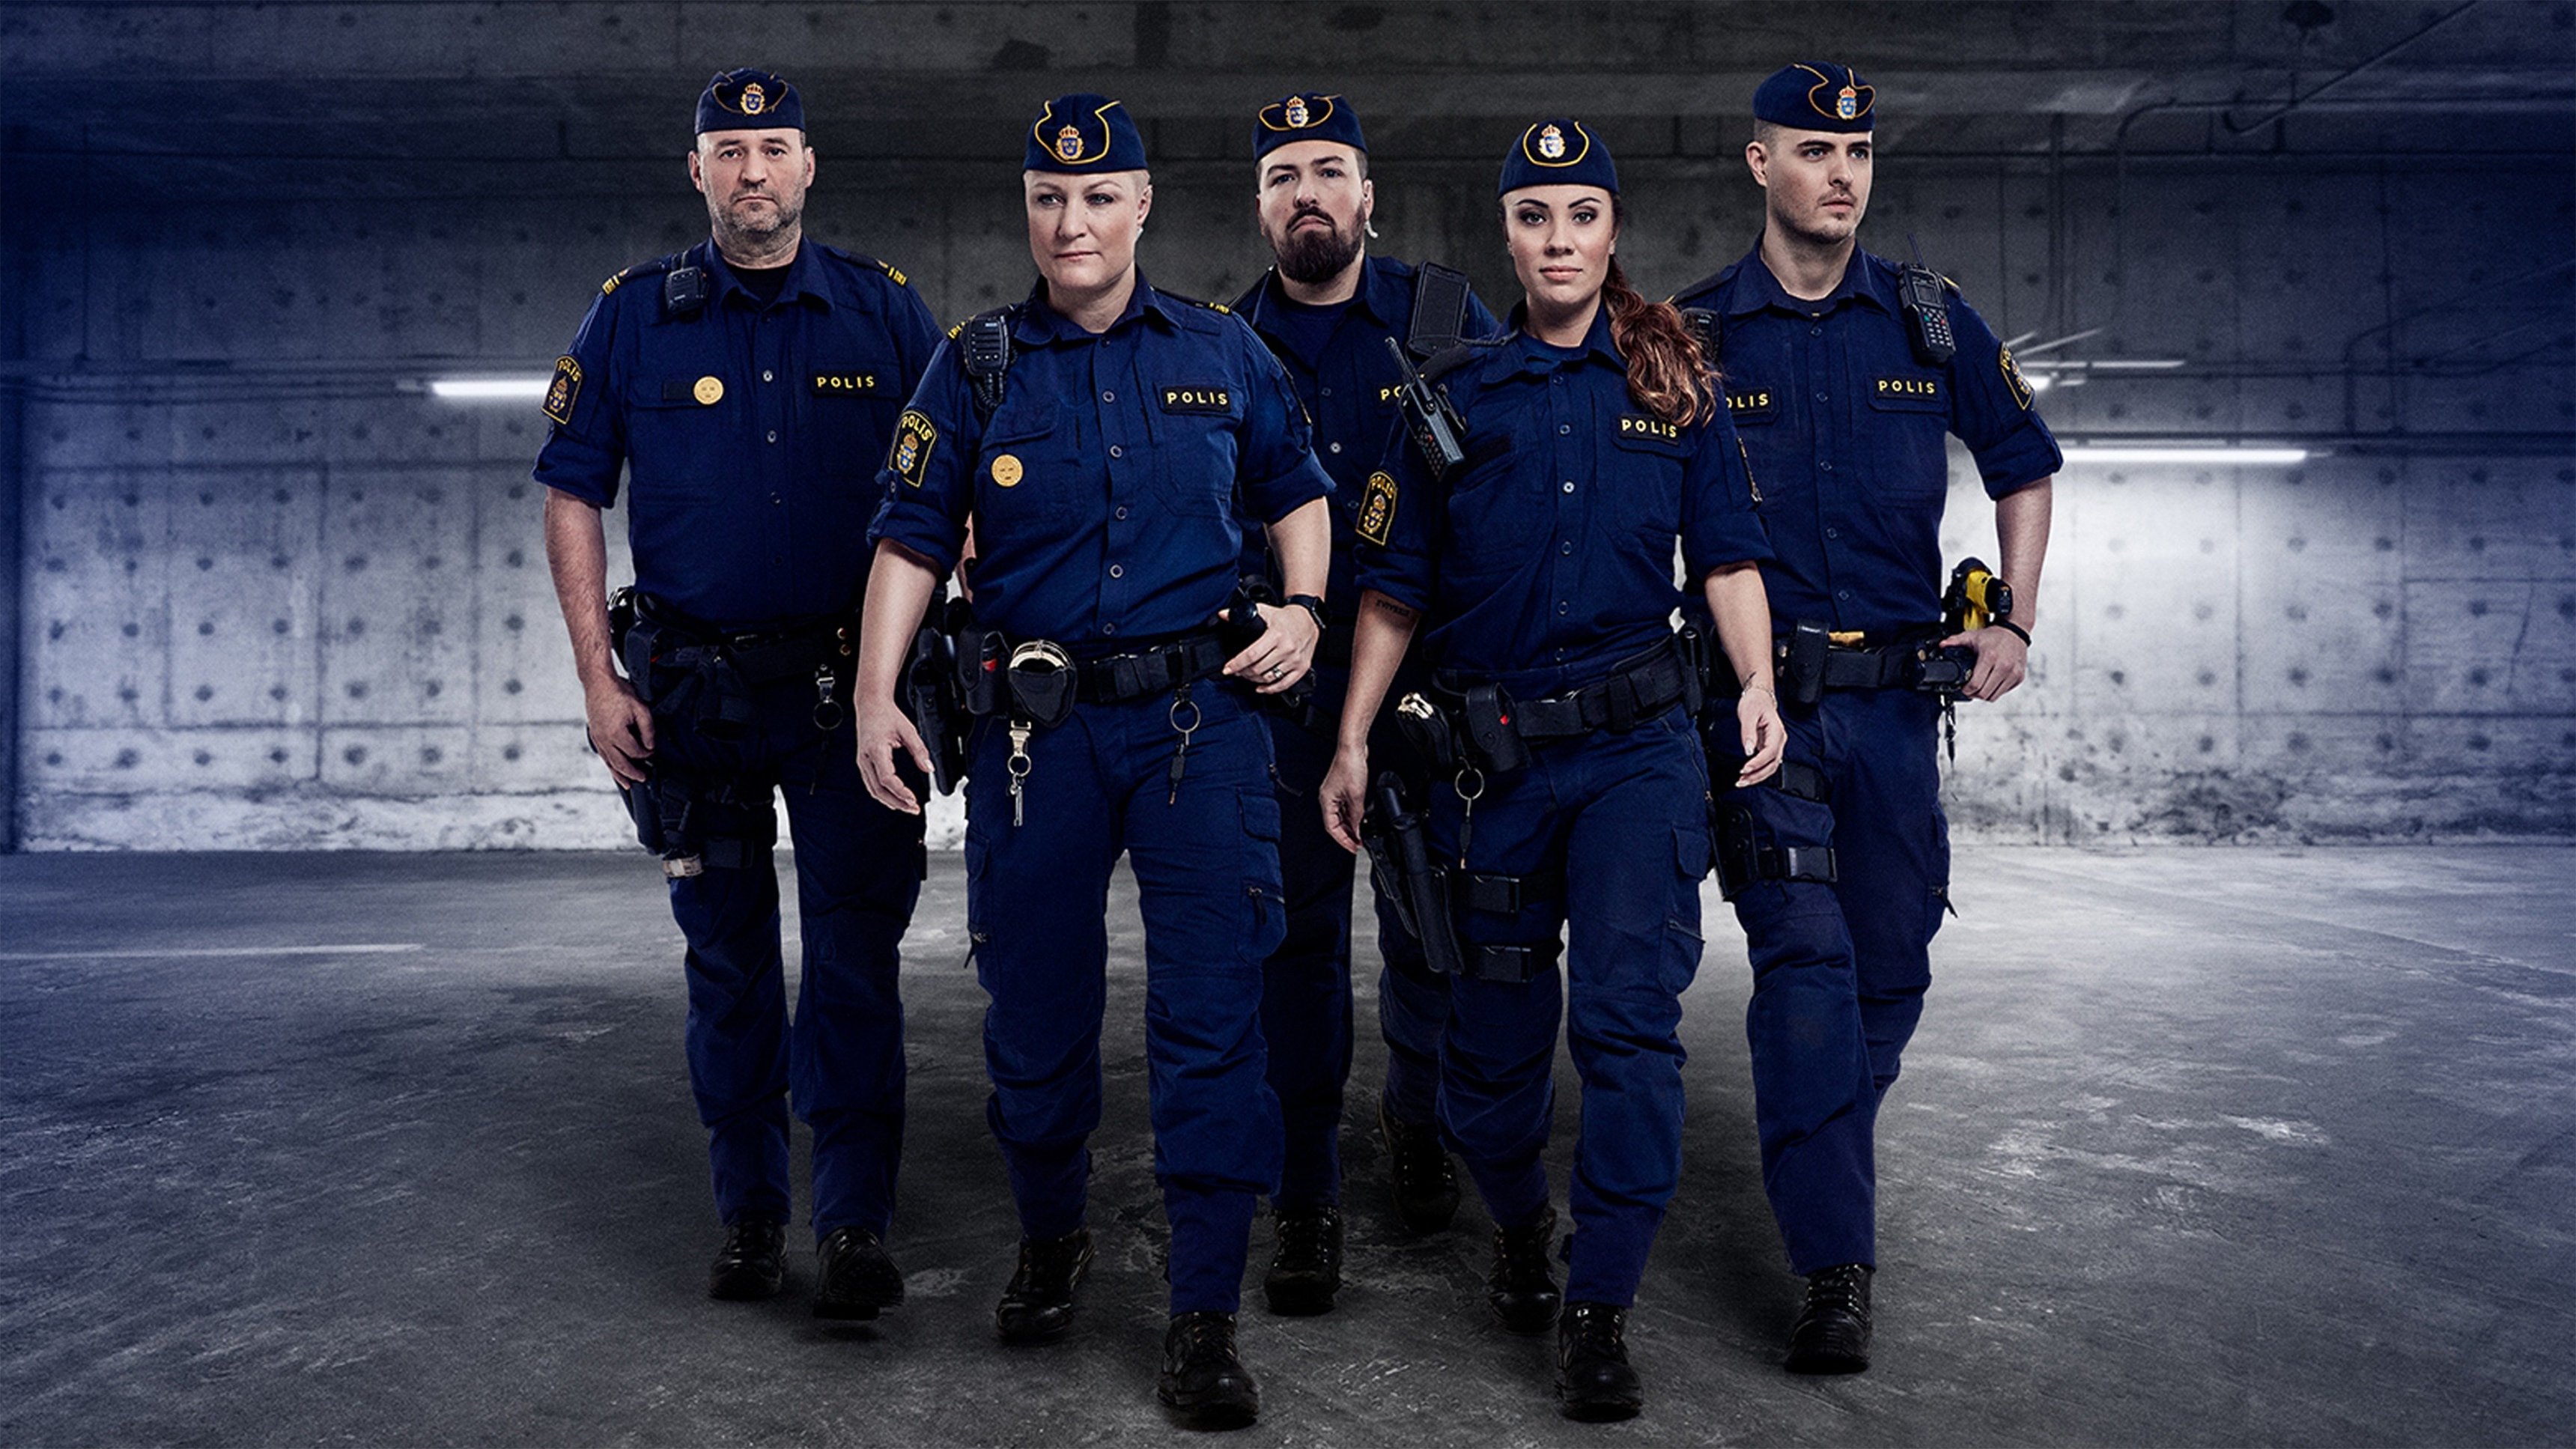 Stockholmspolisen